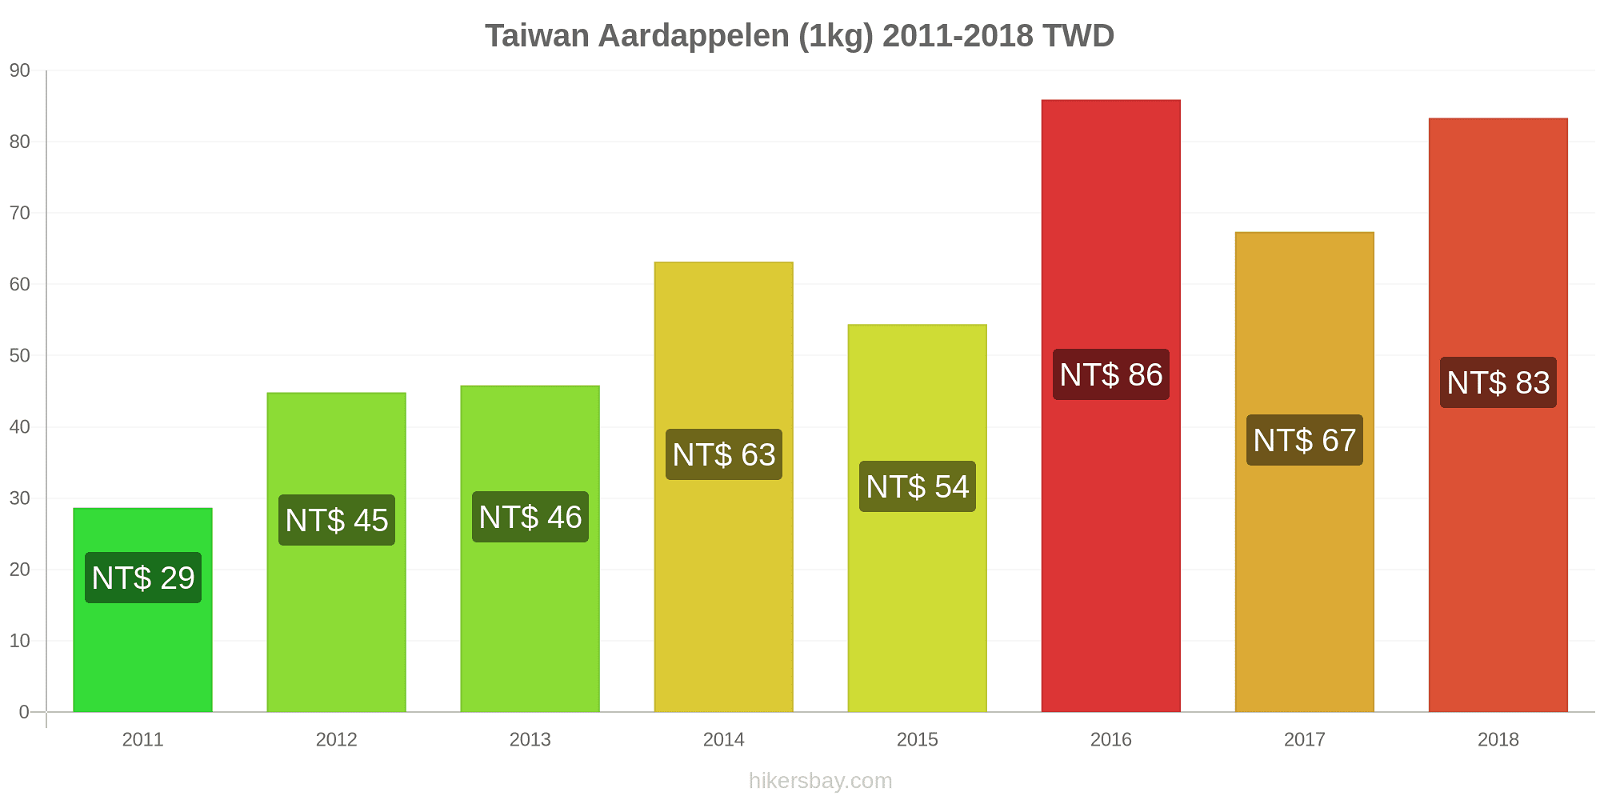 Taiwan prijswijzigingen Aardappelen (1kg) hikersbay.com